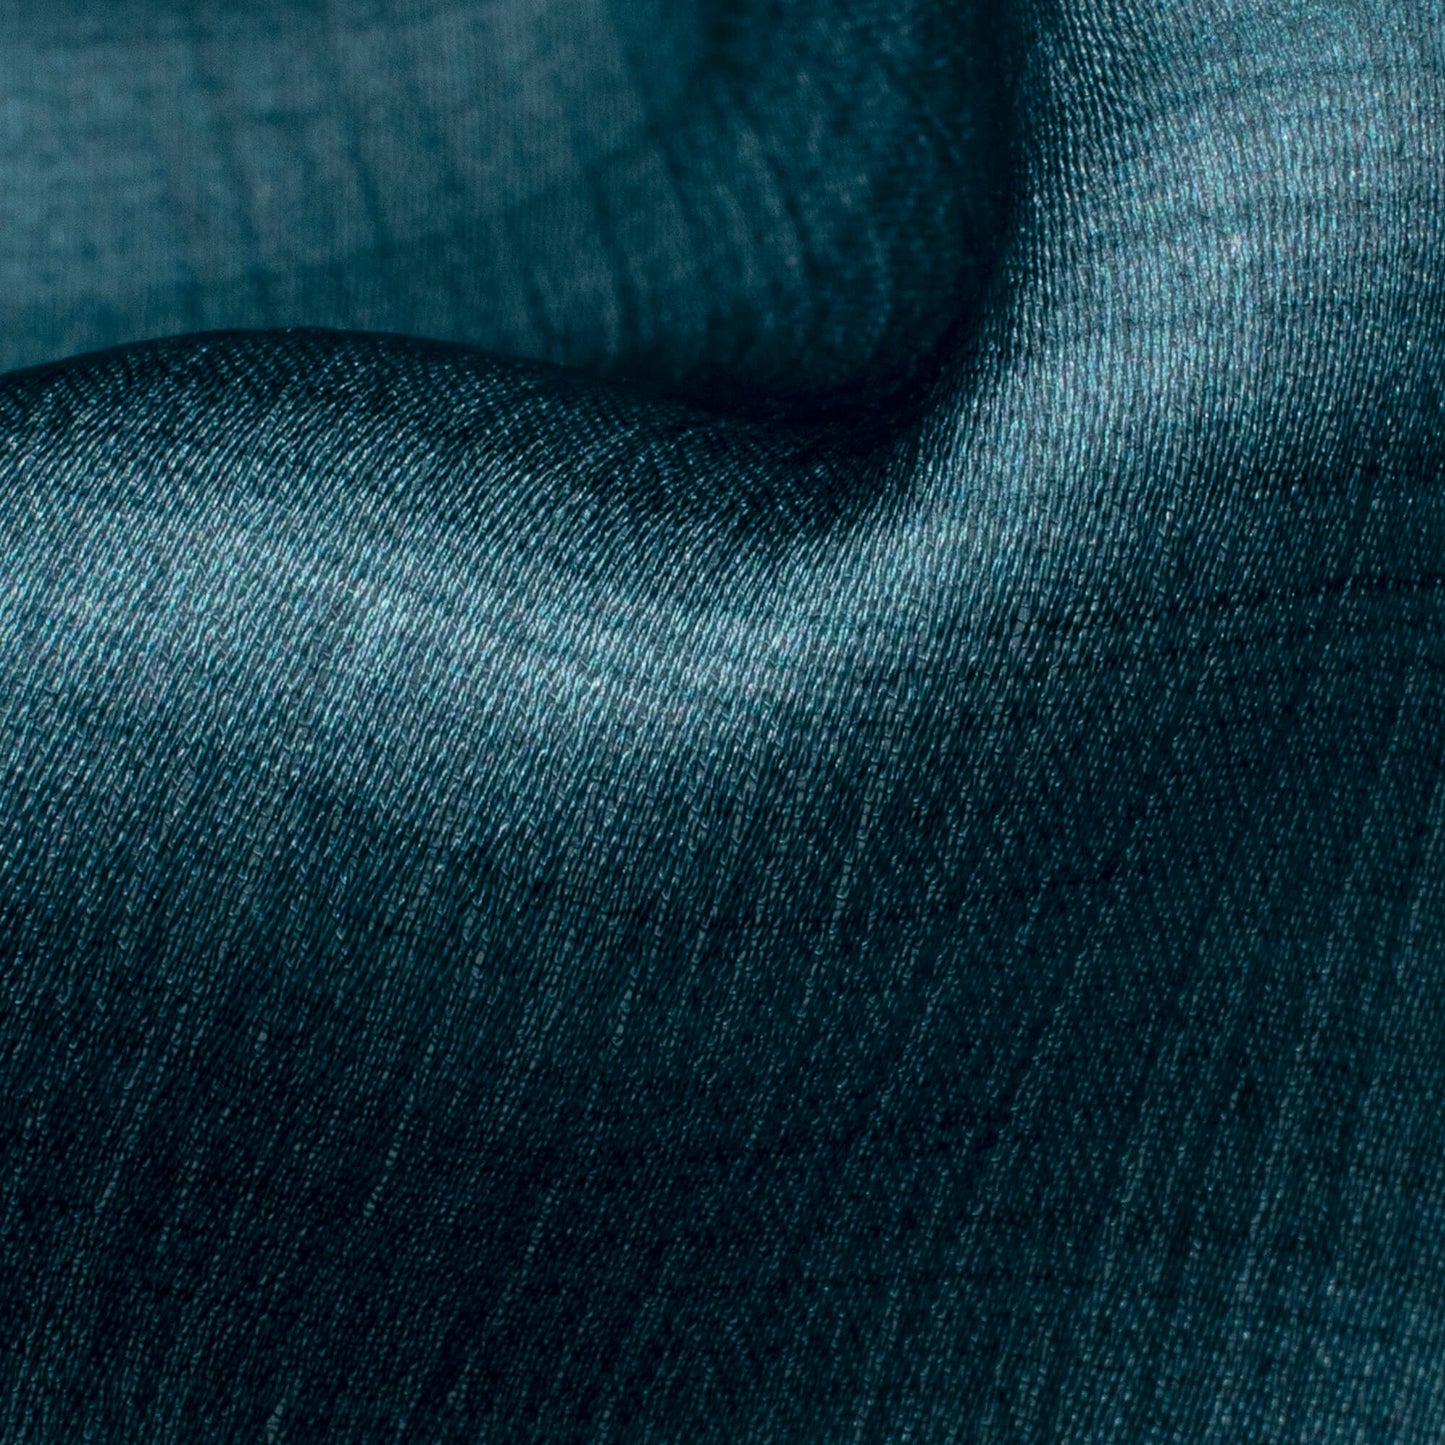 Smalt Blue Texture Pattern Digital Print Chiffon Satin Fabric